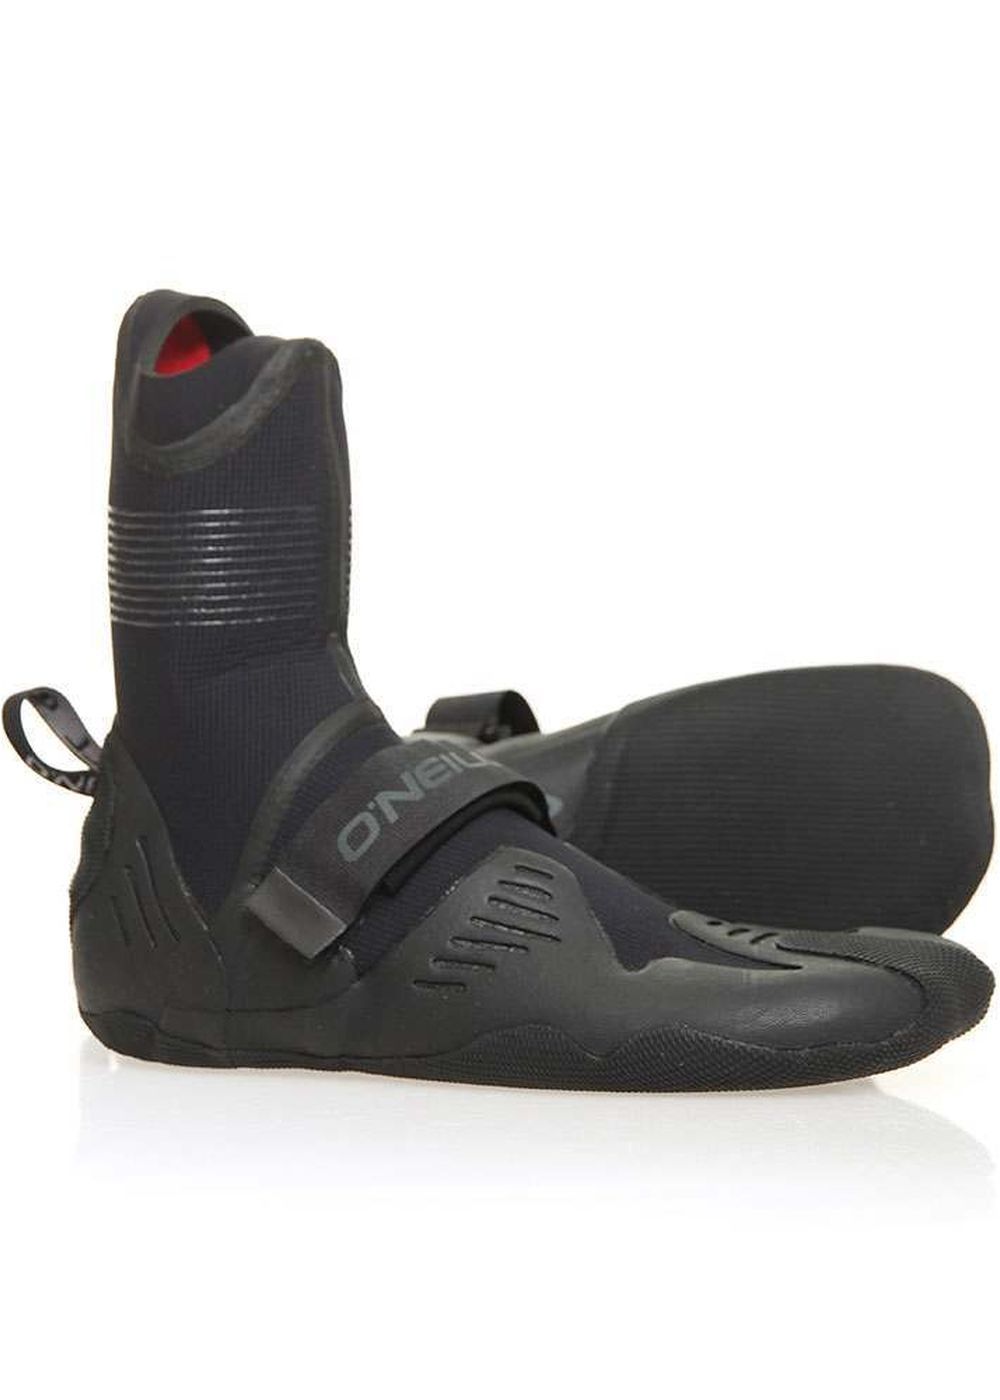 2020/21 O'Neill Psycho Tech 5MM Split Toe Wetsuit Boots 